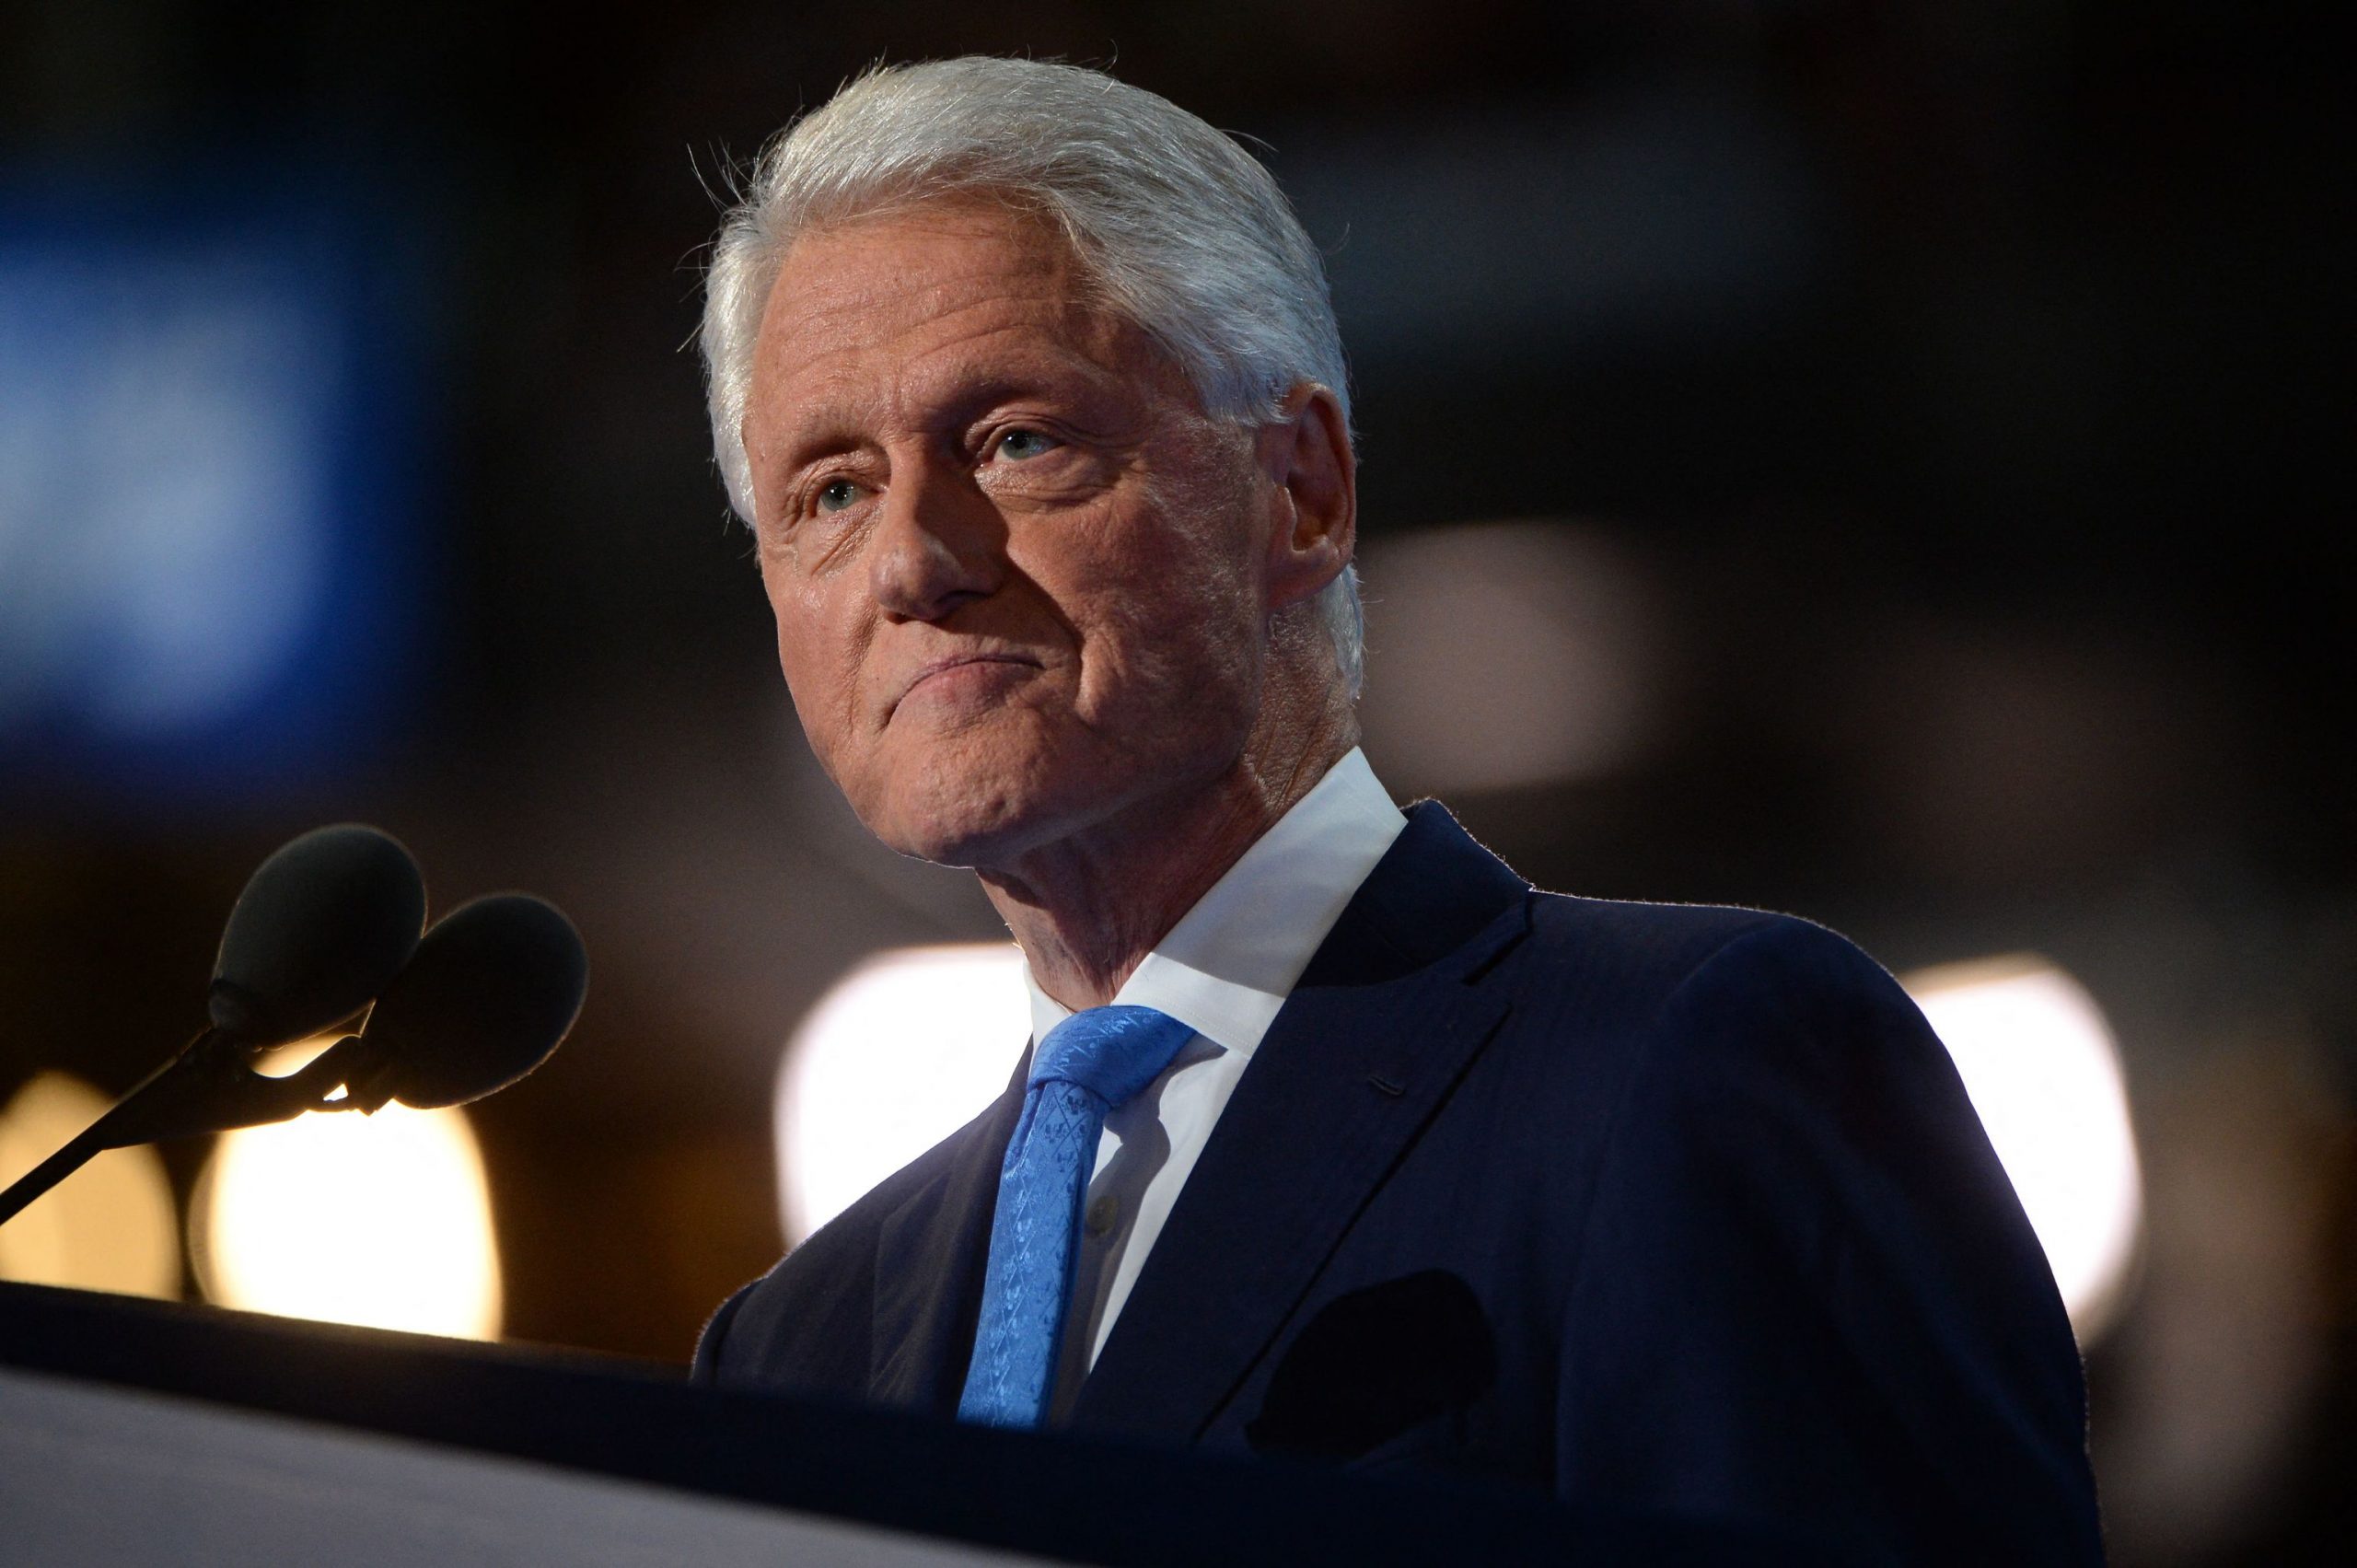 Hospitalizan de emergencia a Bill Clinton: Se encuentra en una unidad de cuidados intensivos